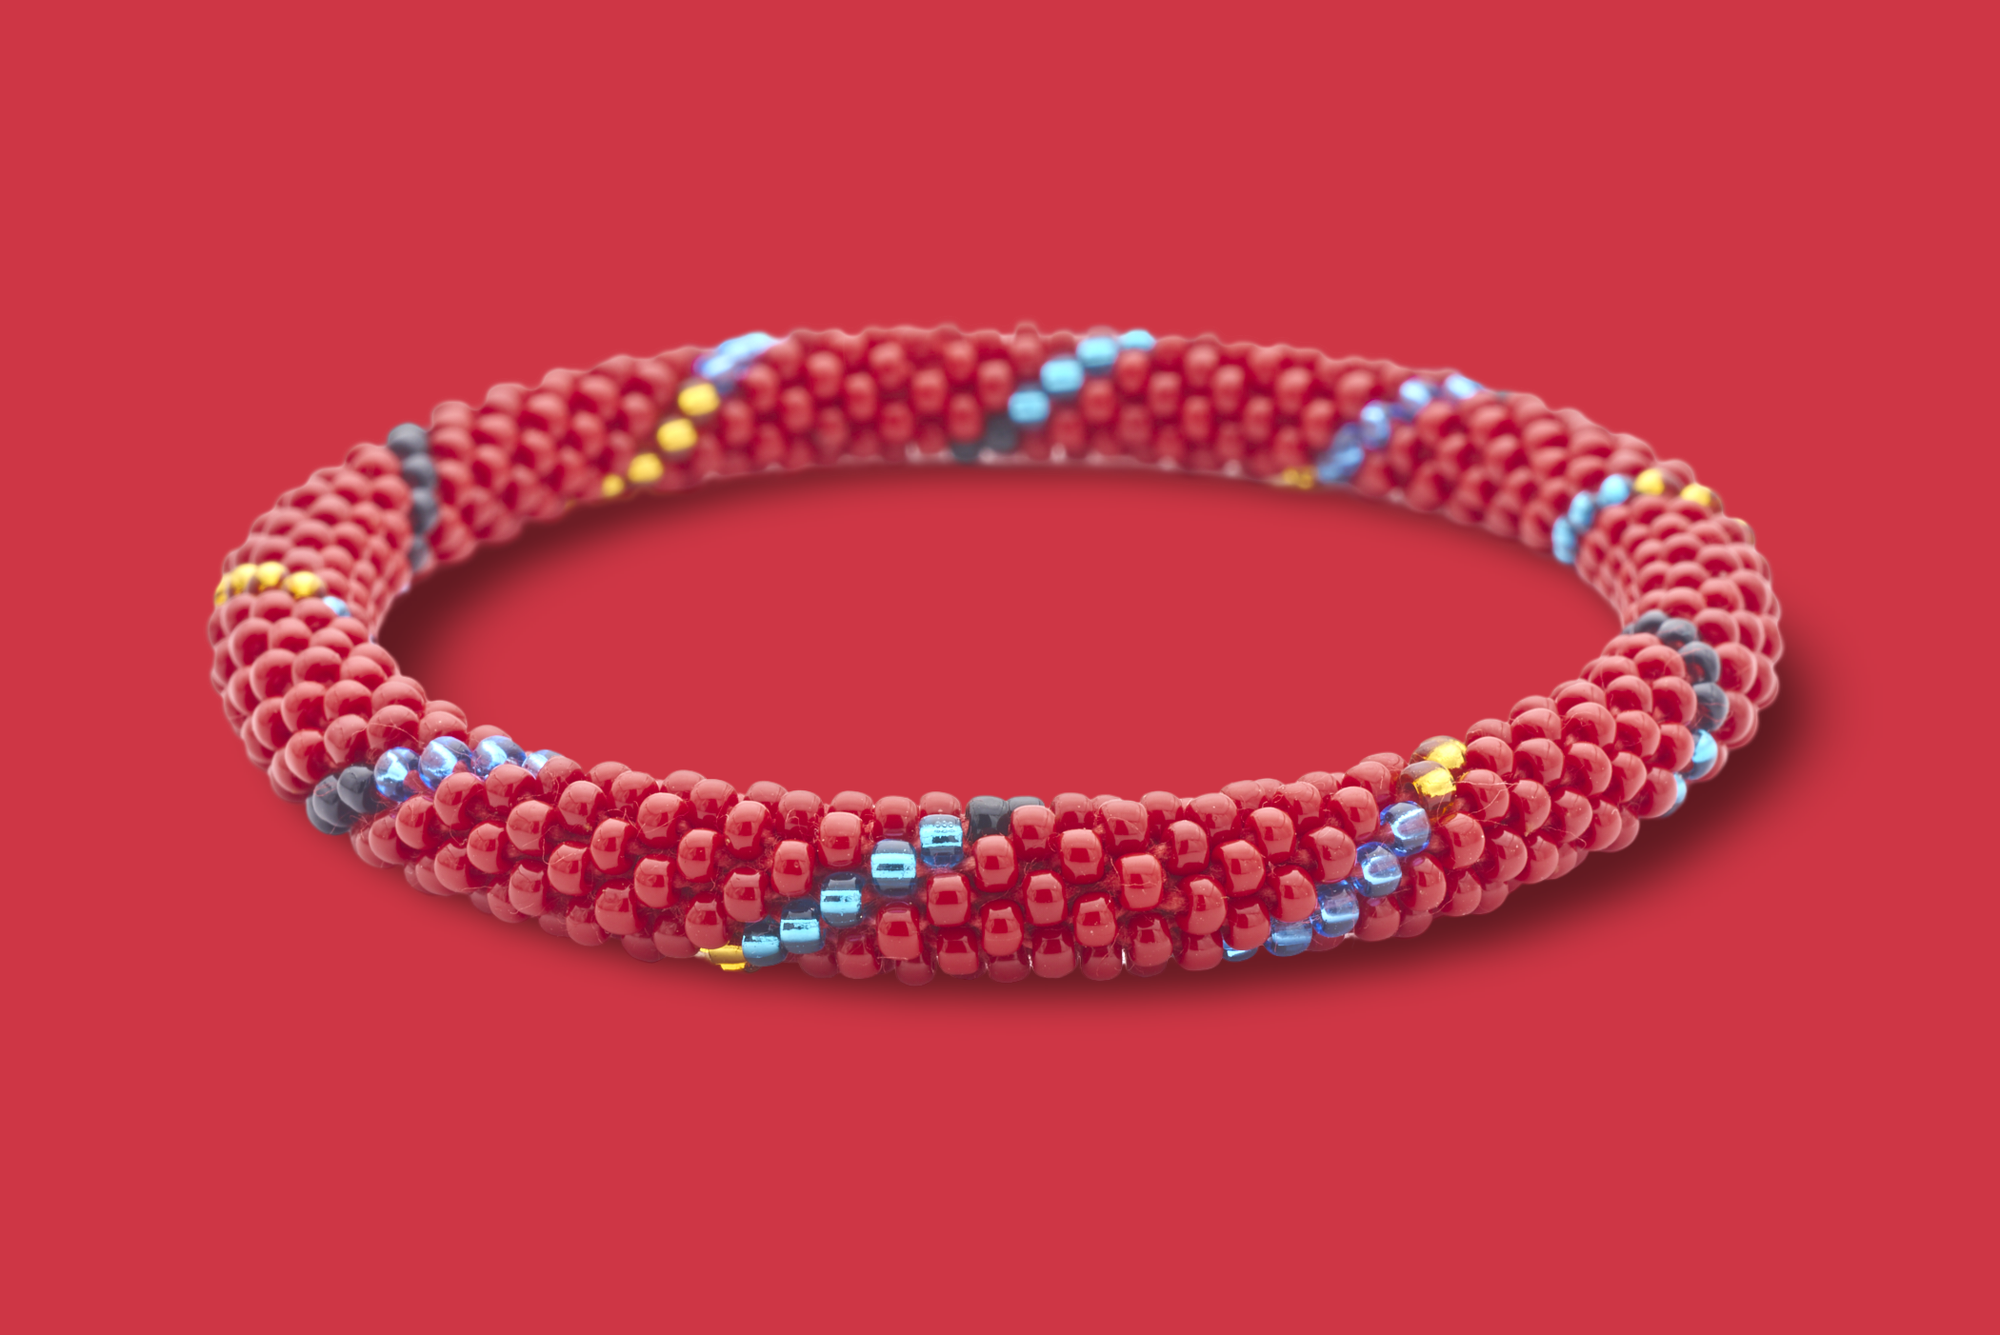 Sashka Co. Original Bracelet Red / Black / Blue / Gold Smart Bracelet